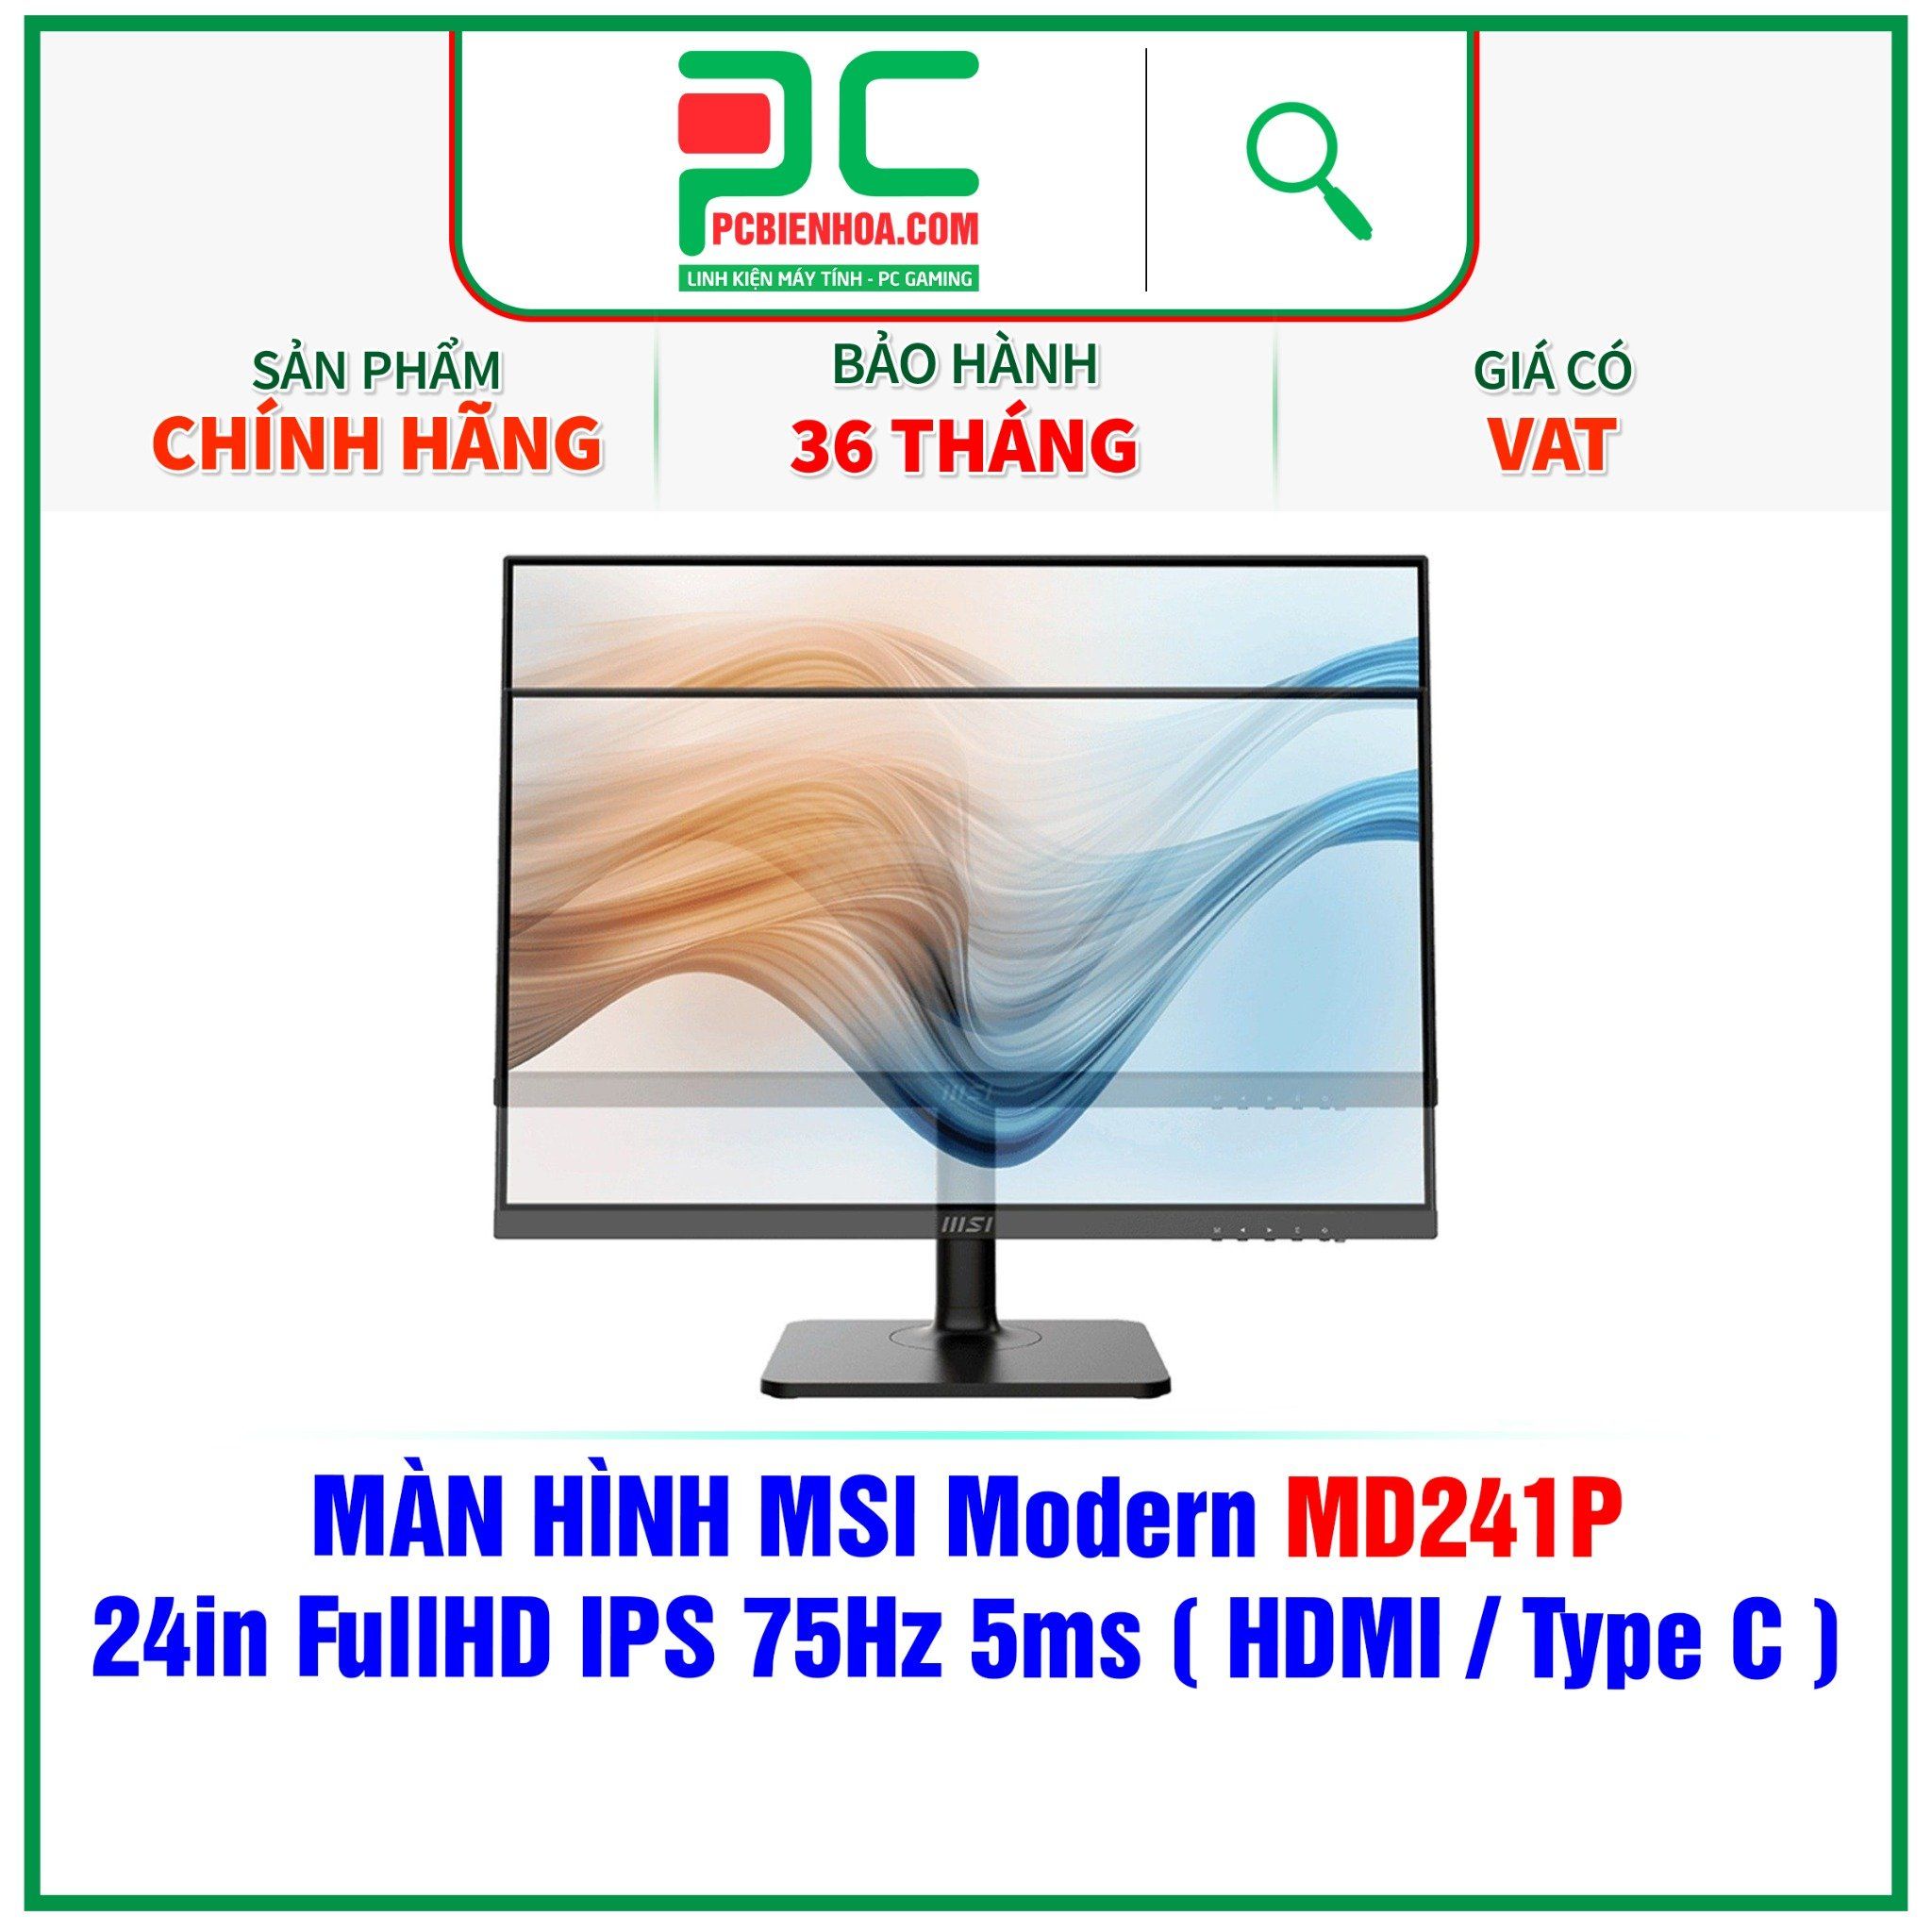  MÀN HÌNH MSI MODERN MD241P - 24in FullHD IPS 75Hz 5ms ( HDMI / USB type C ) - SIÊU PHẨM ĐỒ HOẠ HIỆN ĐẠI 